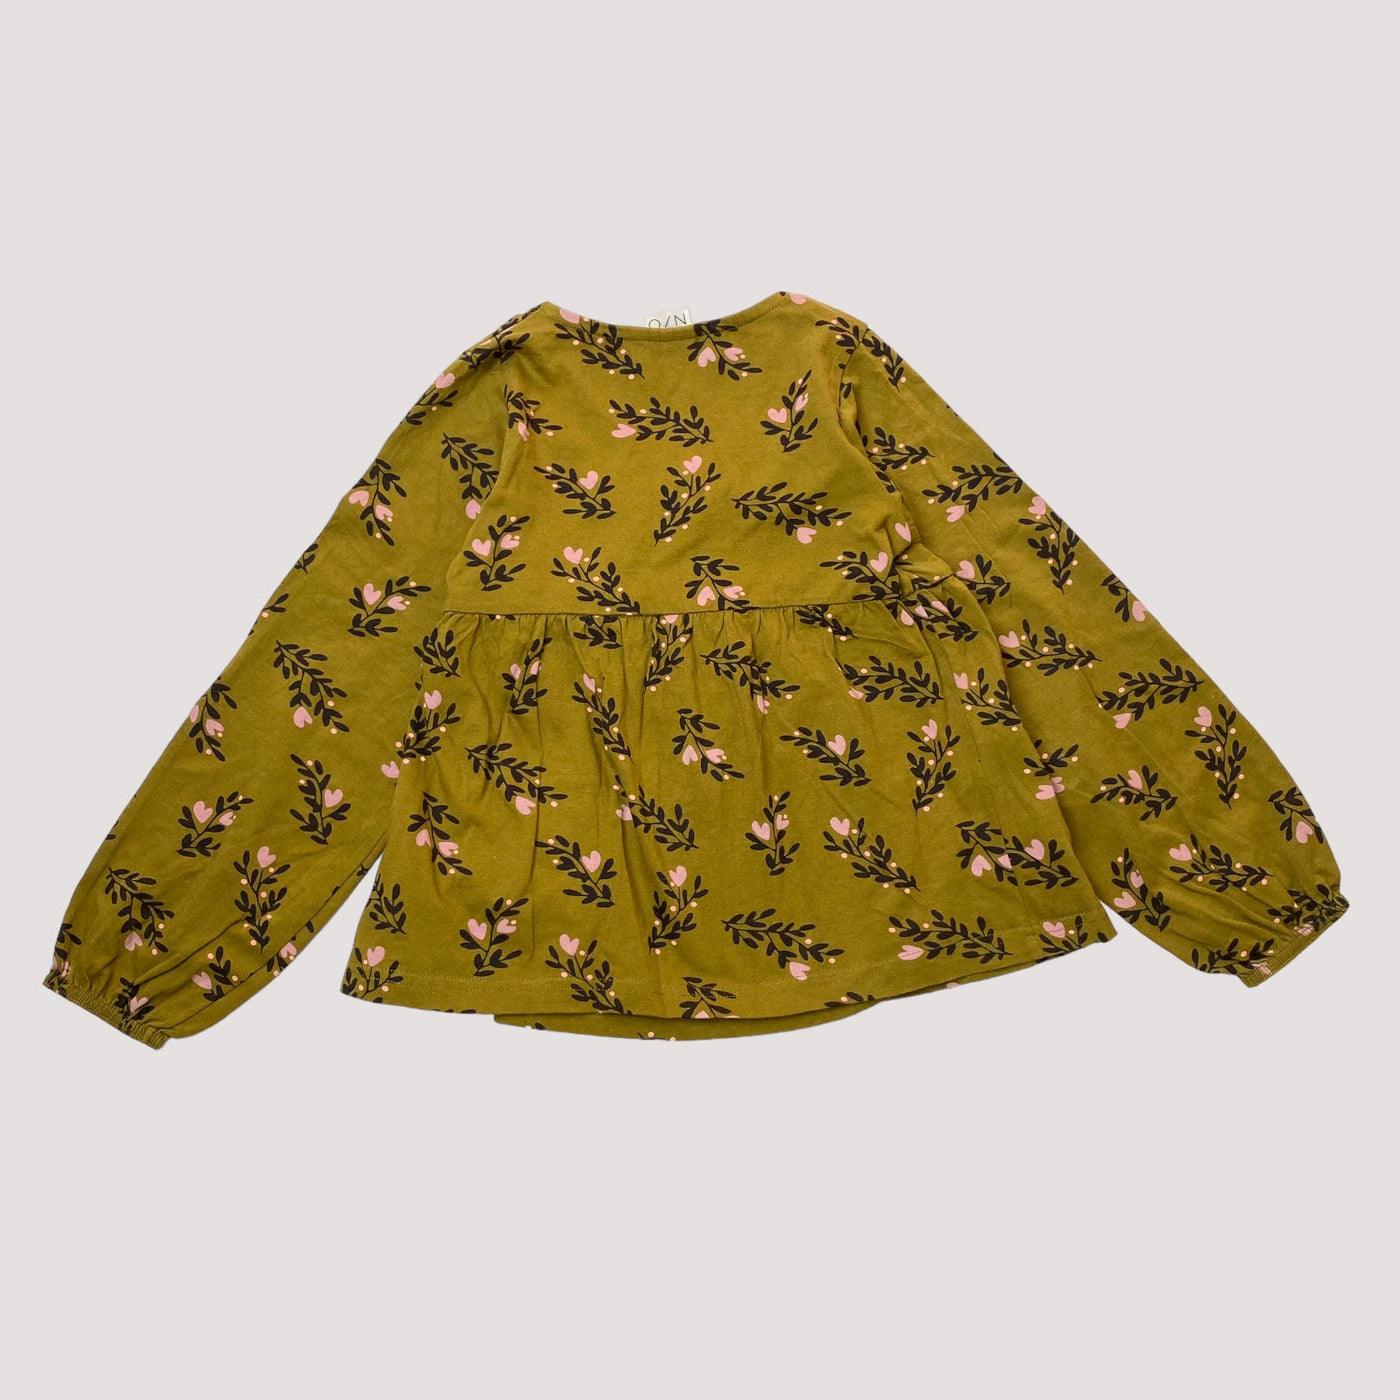 Mainio wrap shirt, secret garden | 122/128cm